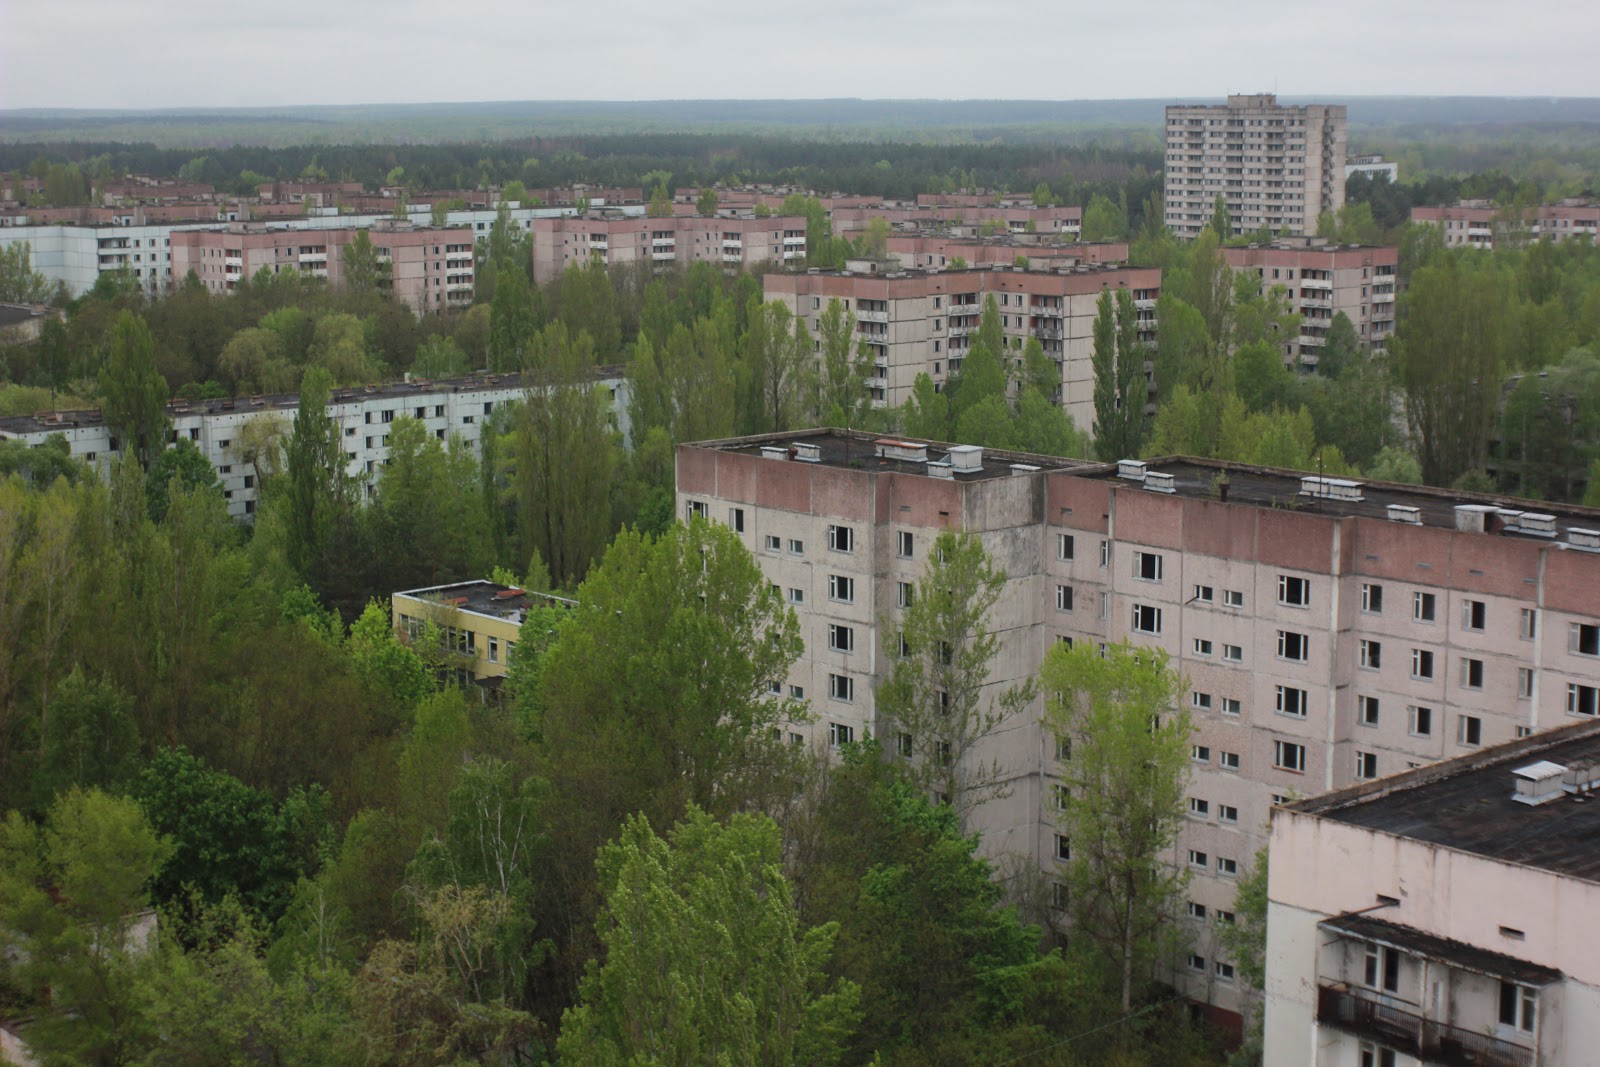 Поход в Припять и Чернобыль нелегально: реальный обзор от сталкера